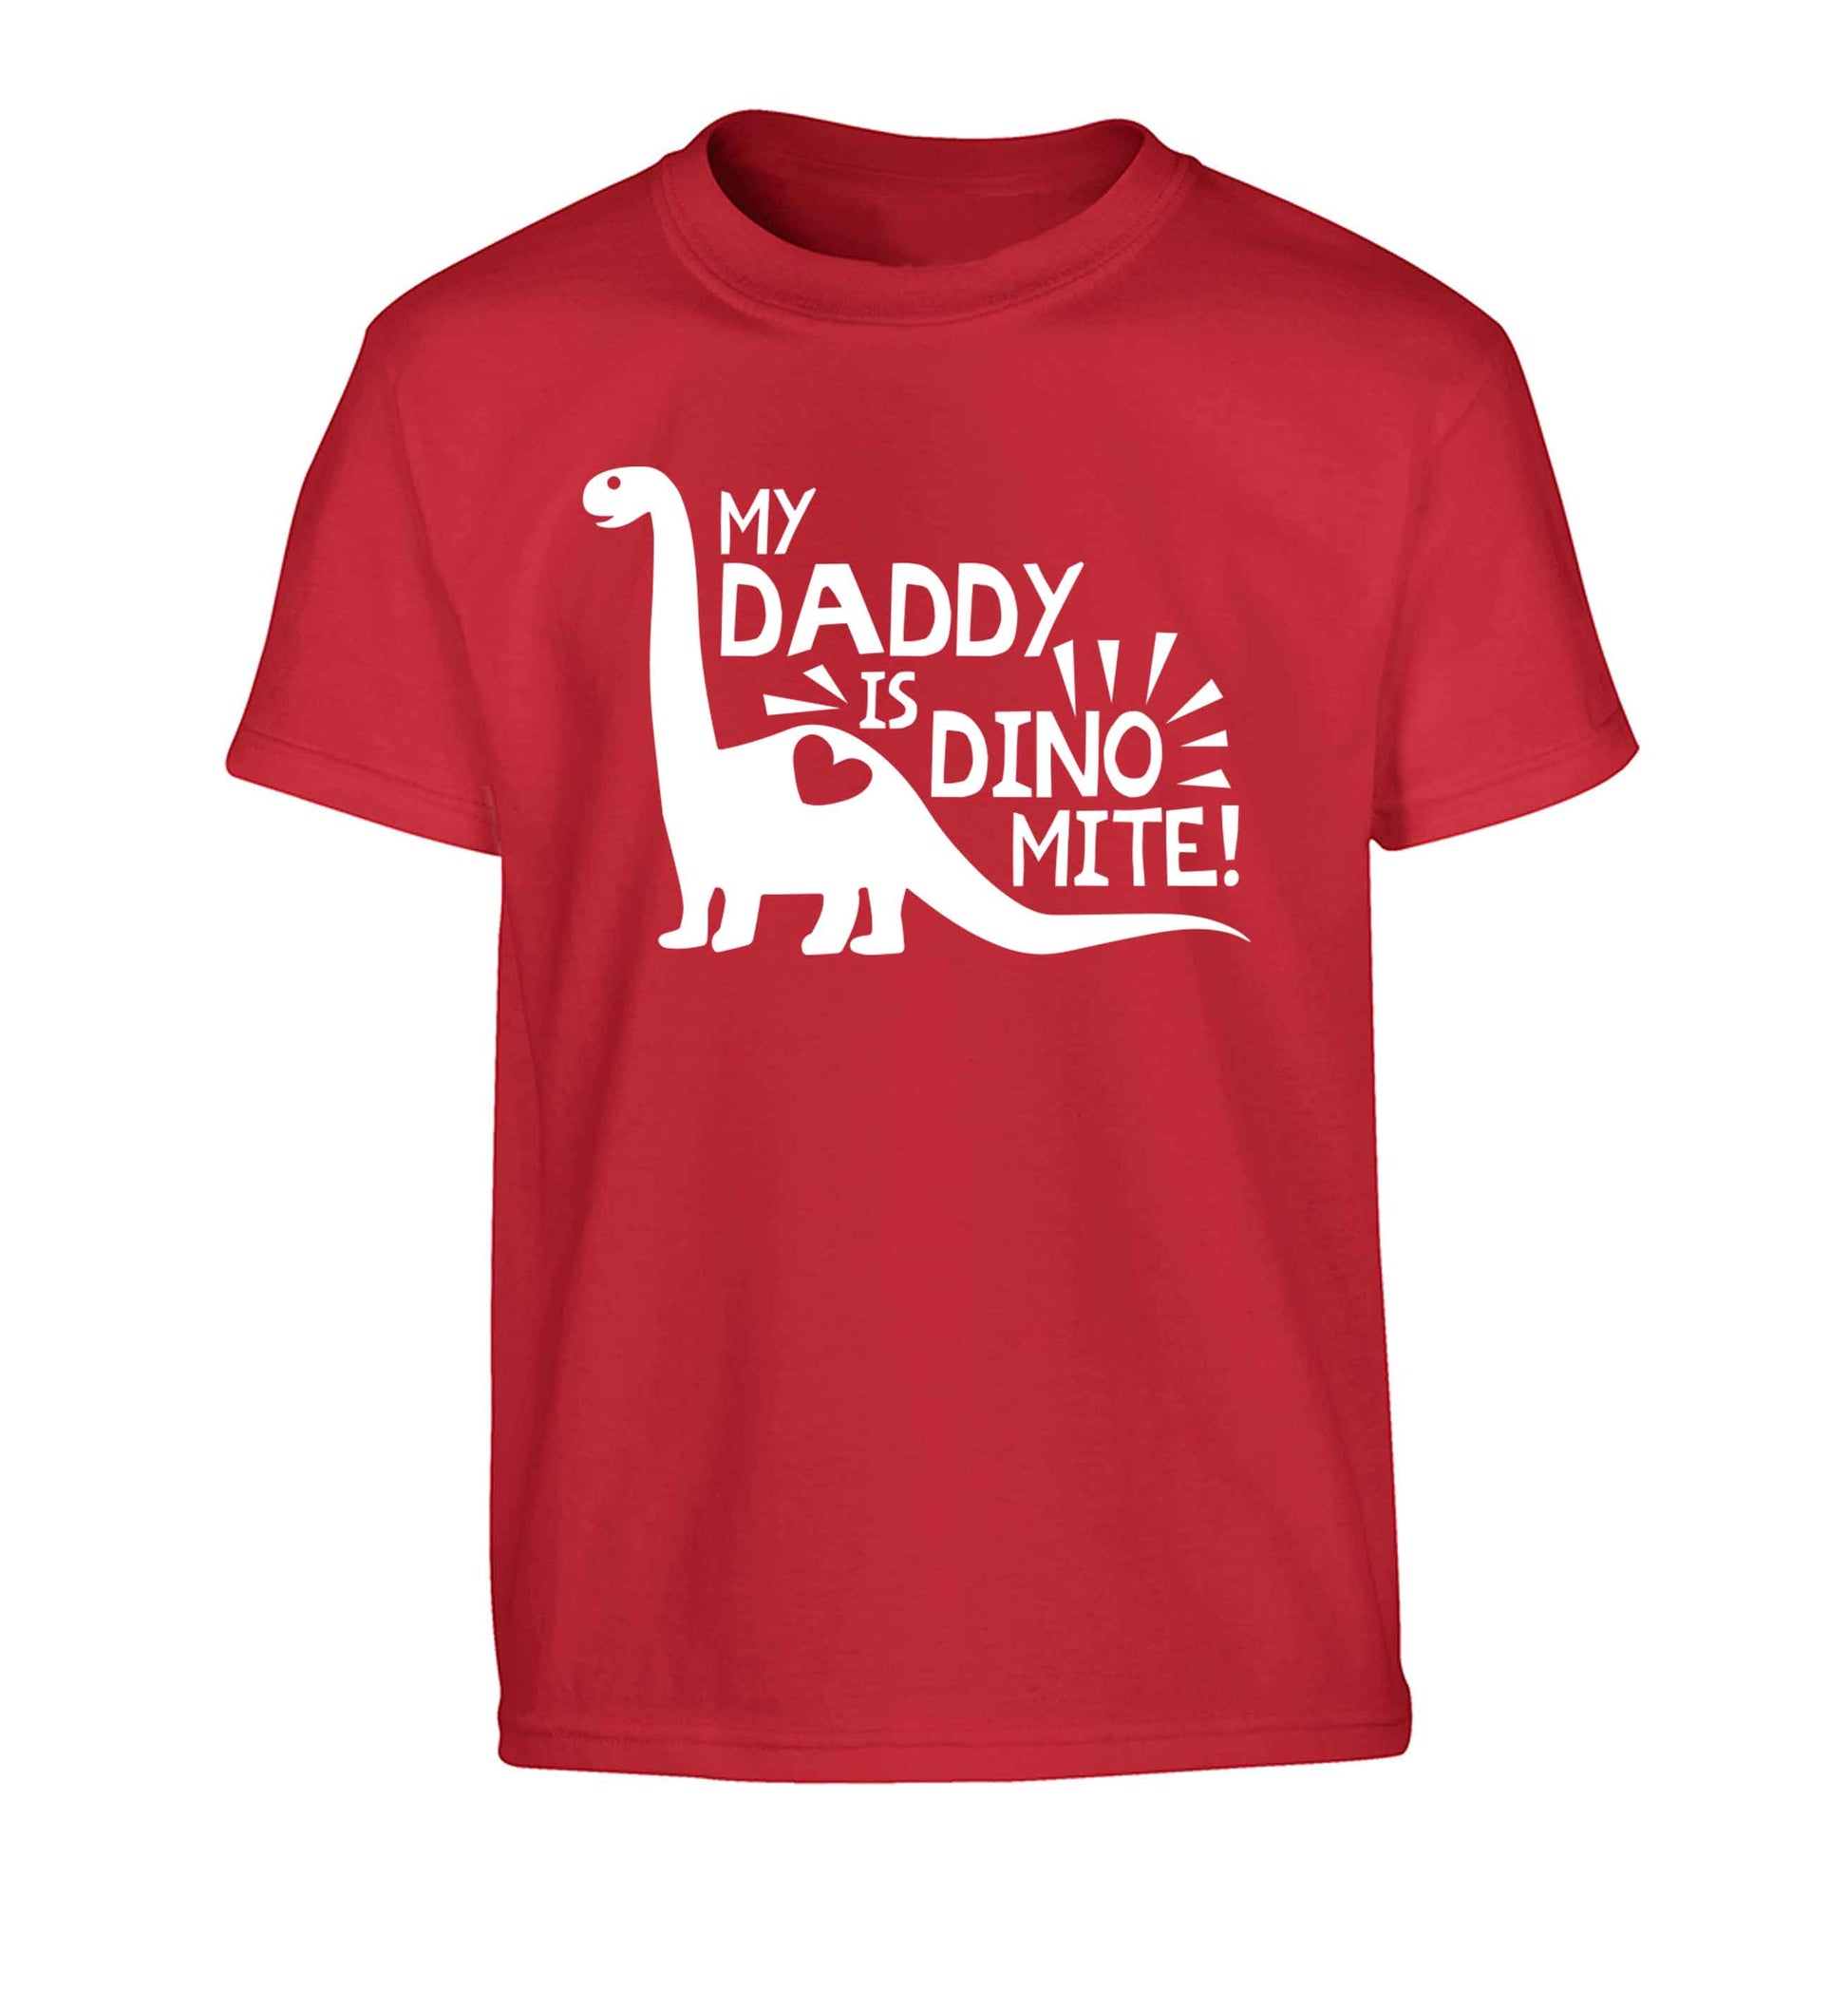 My daddy is dinomite! Children's red Tshirt 12-13 Years